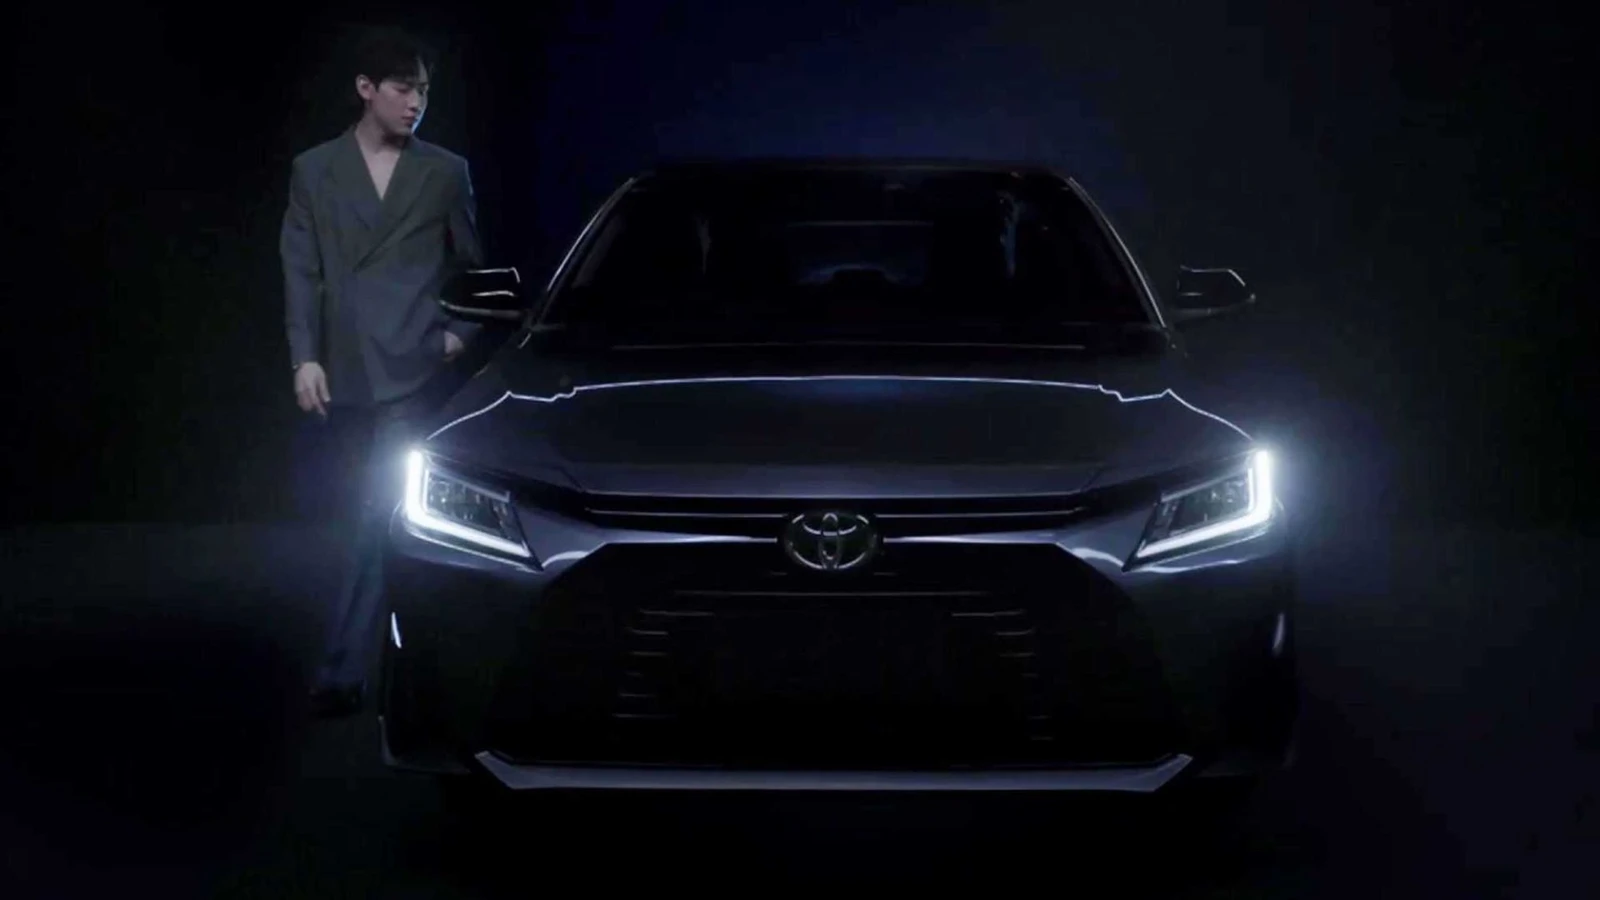 yaris - El próximo Toyota Yaris tendría mucho del Corolla (Junio 2022) NAZ_26a5fff52529453b906bfd78953eef56